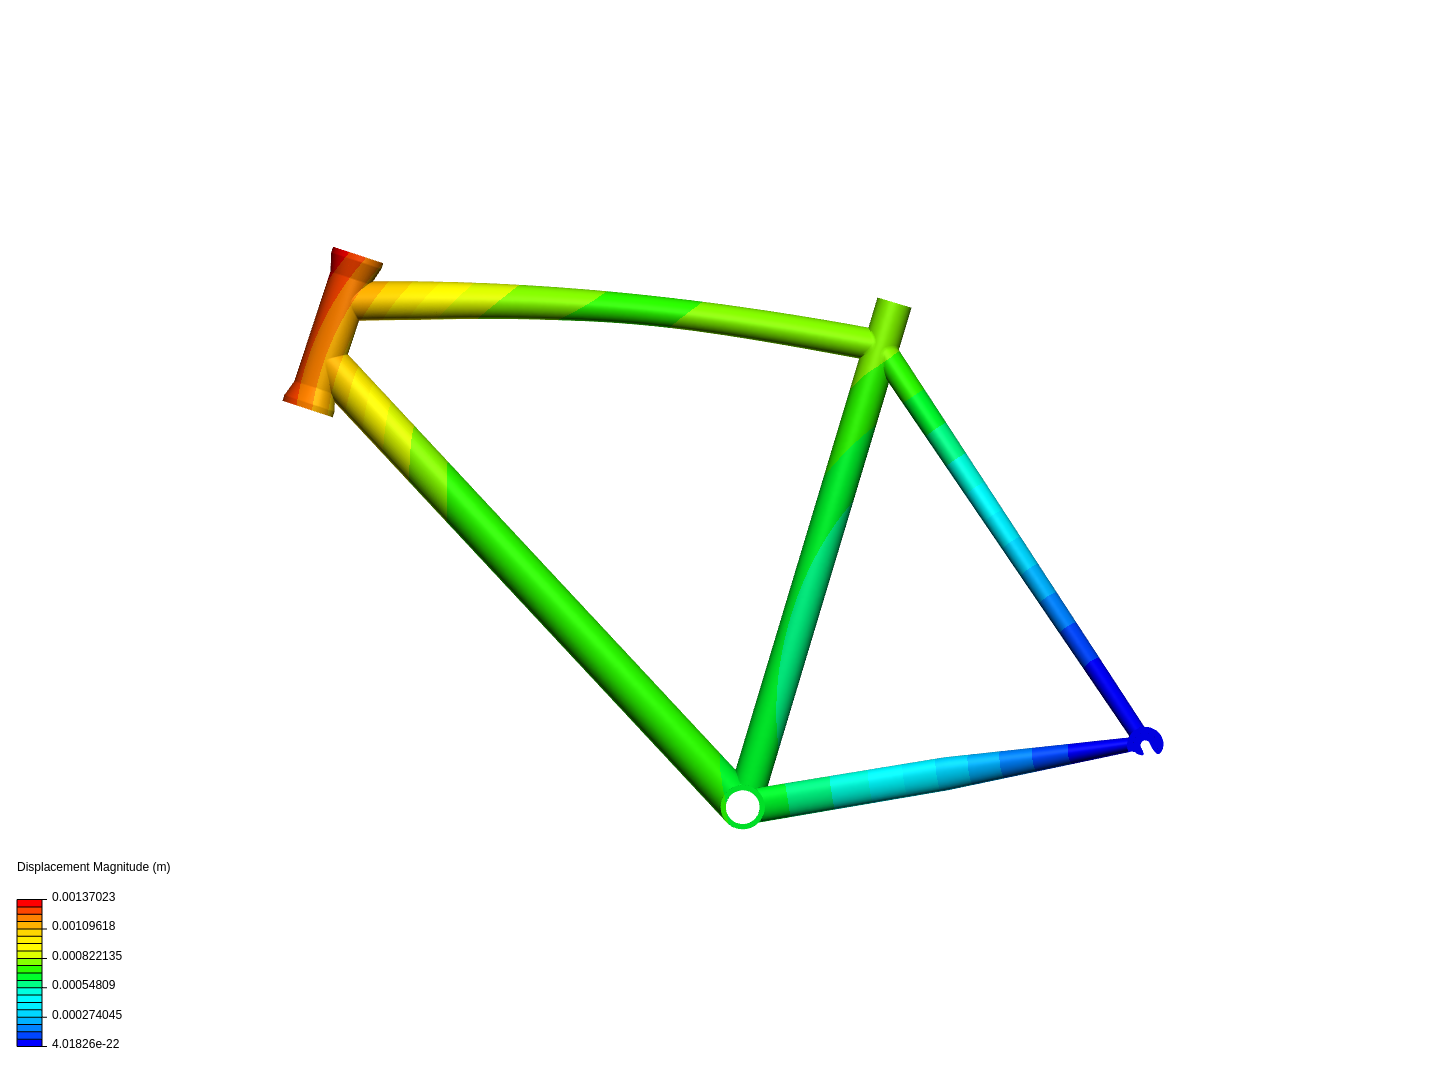 Bike frame analysis image